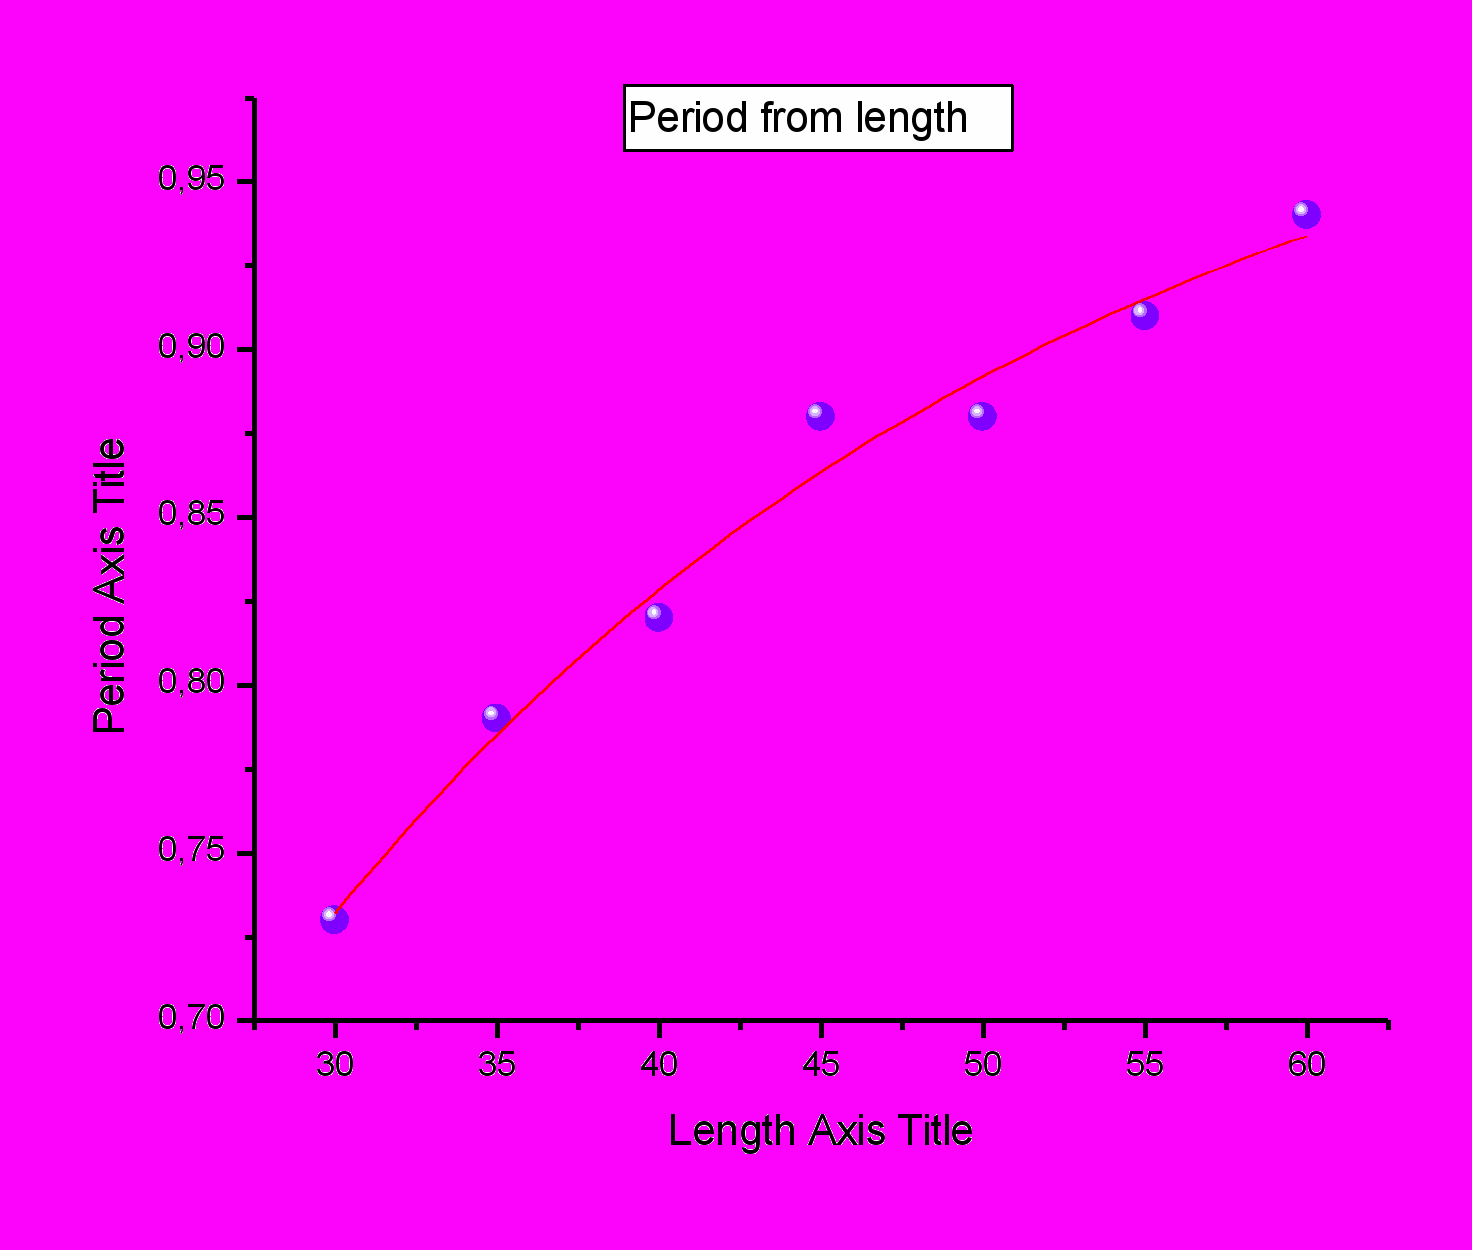 Найти отношение длин двух математических маятников, если отношение периодов их колебаний равно 1,5.